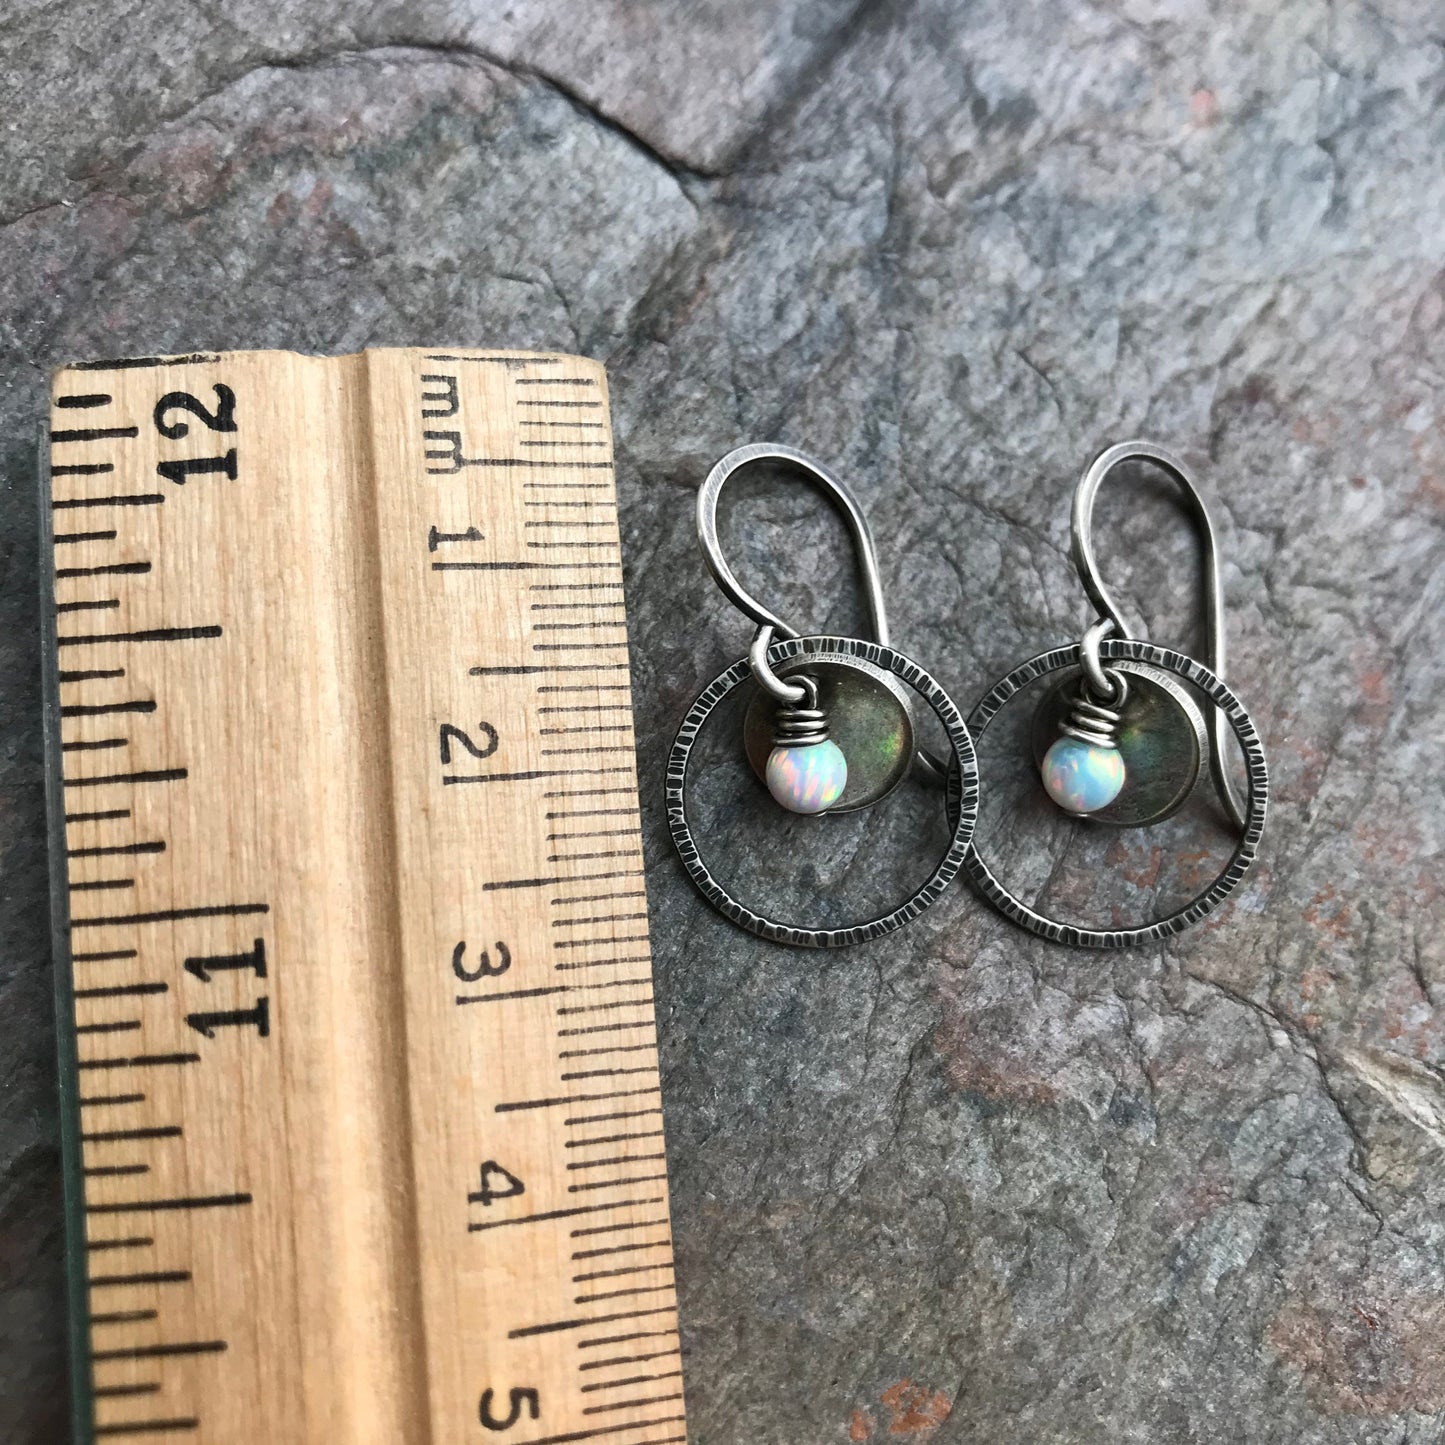 Opal Sterling Silver Earrings - Opal Beads in Textured Rings on Handmade Sterling Silver Earwires